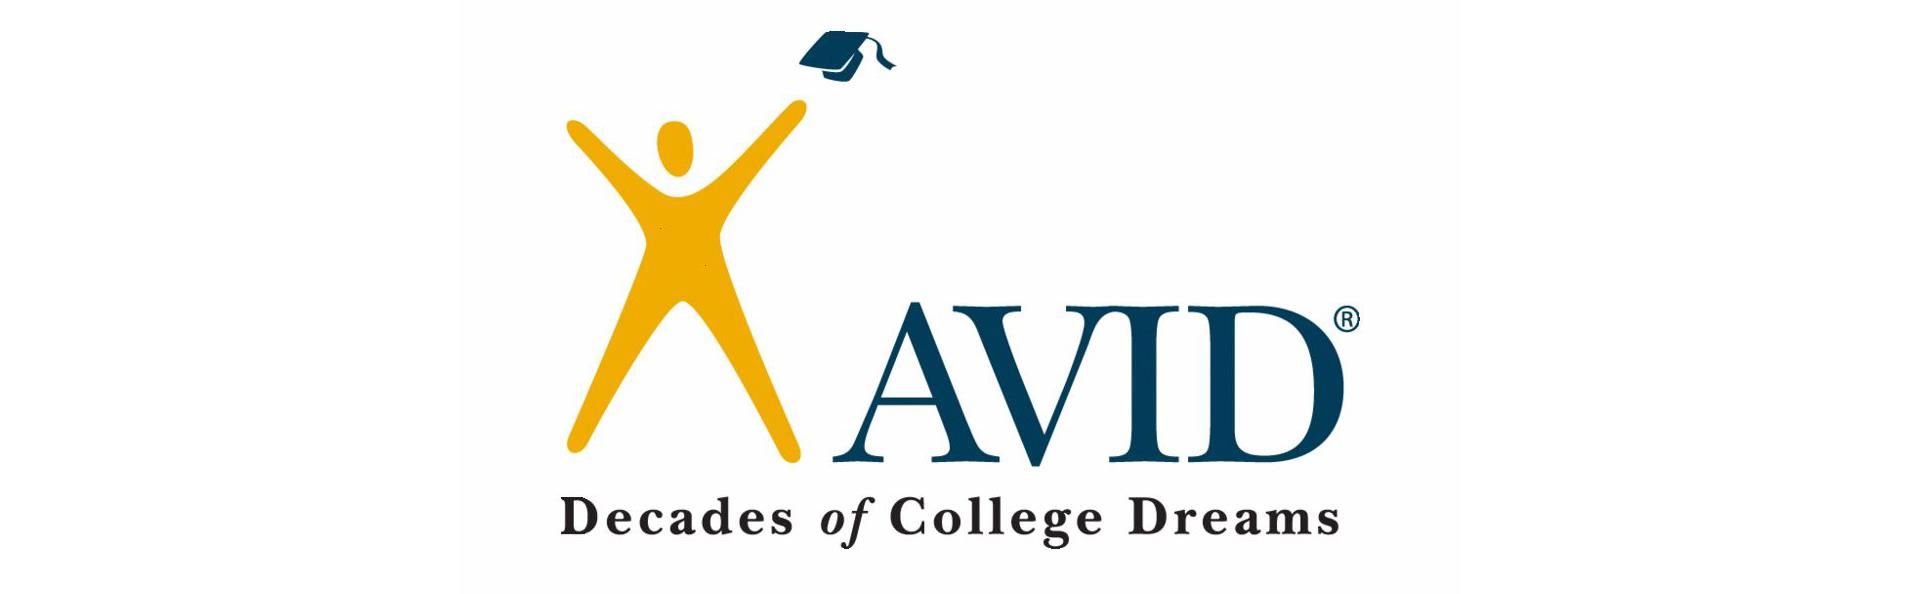 AVID - Decades of College Dreams 